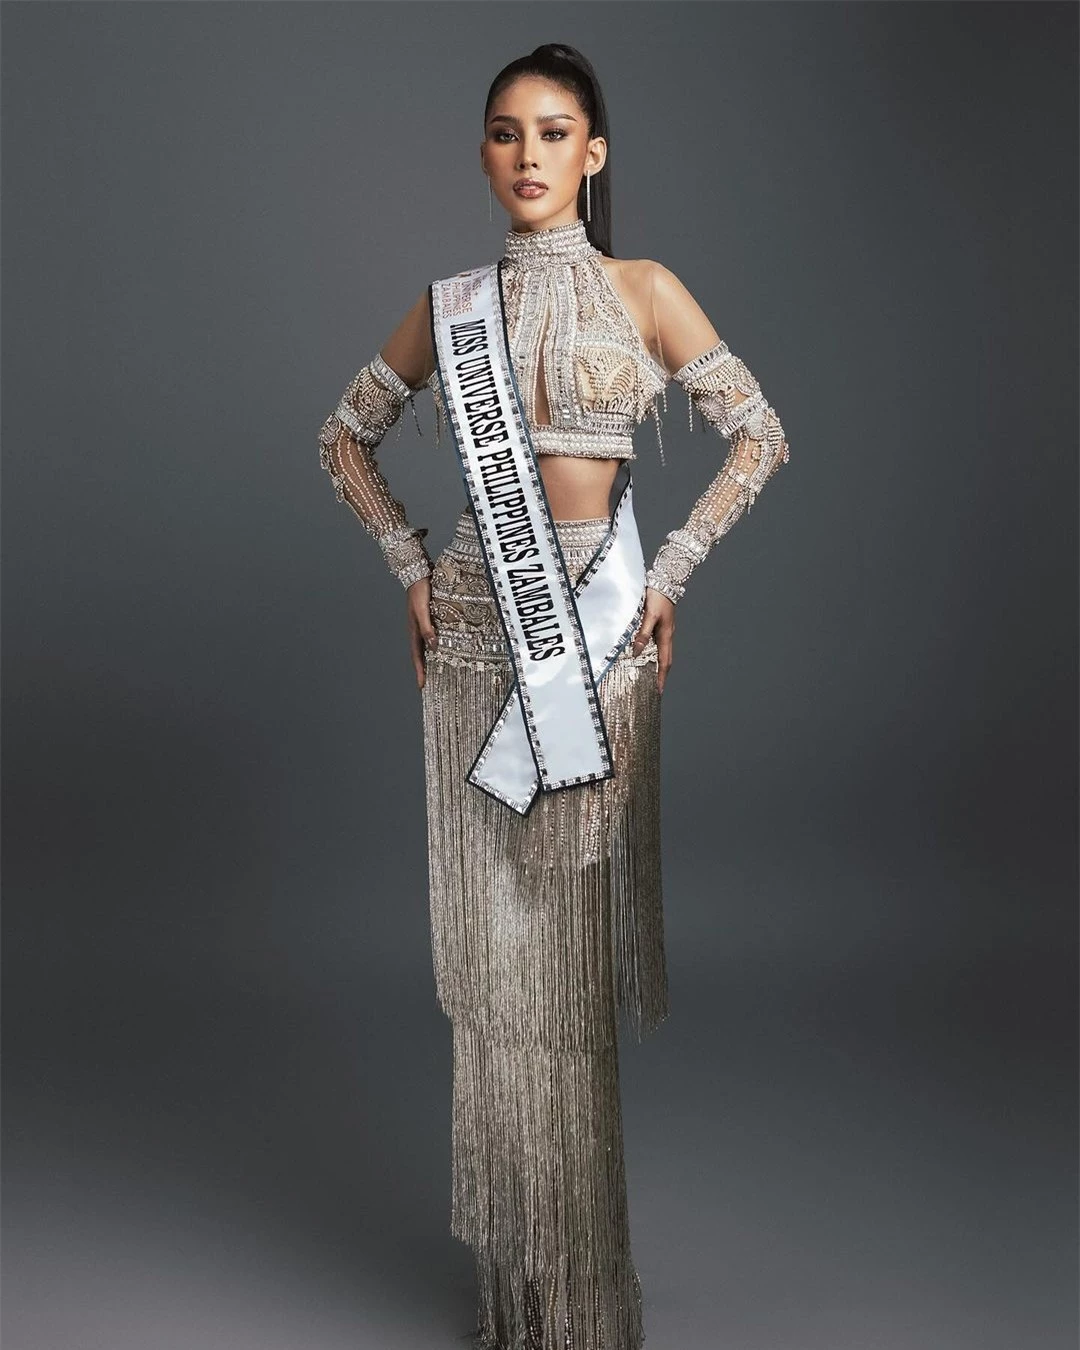 Người đẹp có vòng eo 51 cm tại Hoa hậu Hoàn vũ Philippines ảnh 1